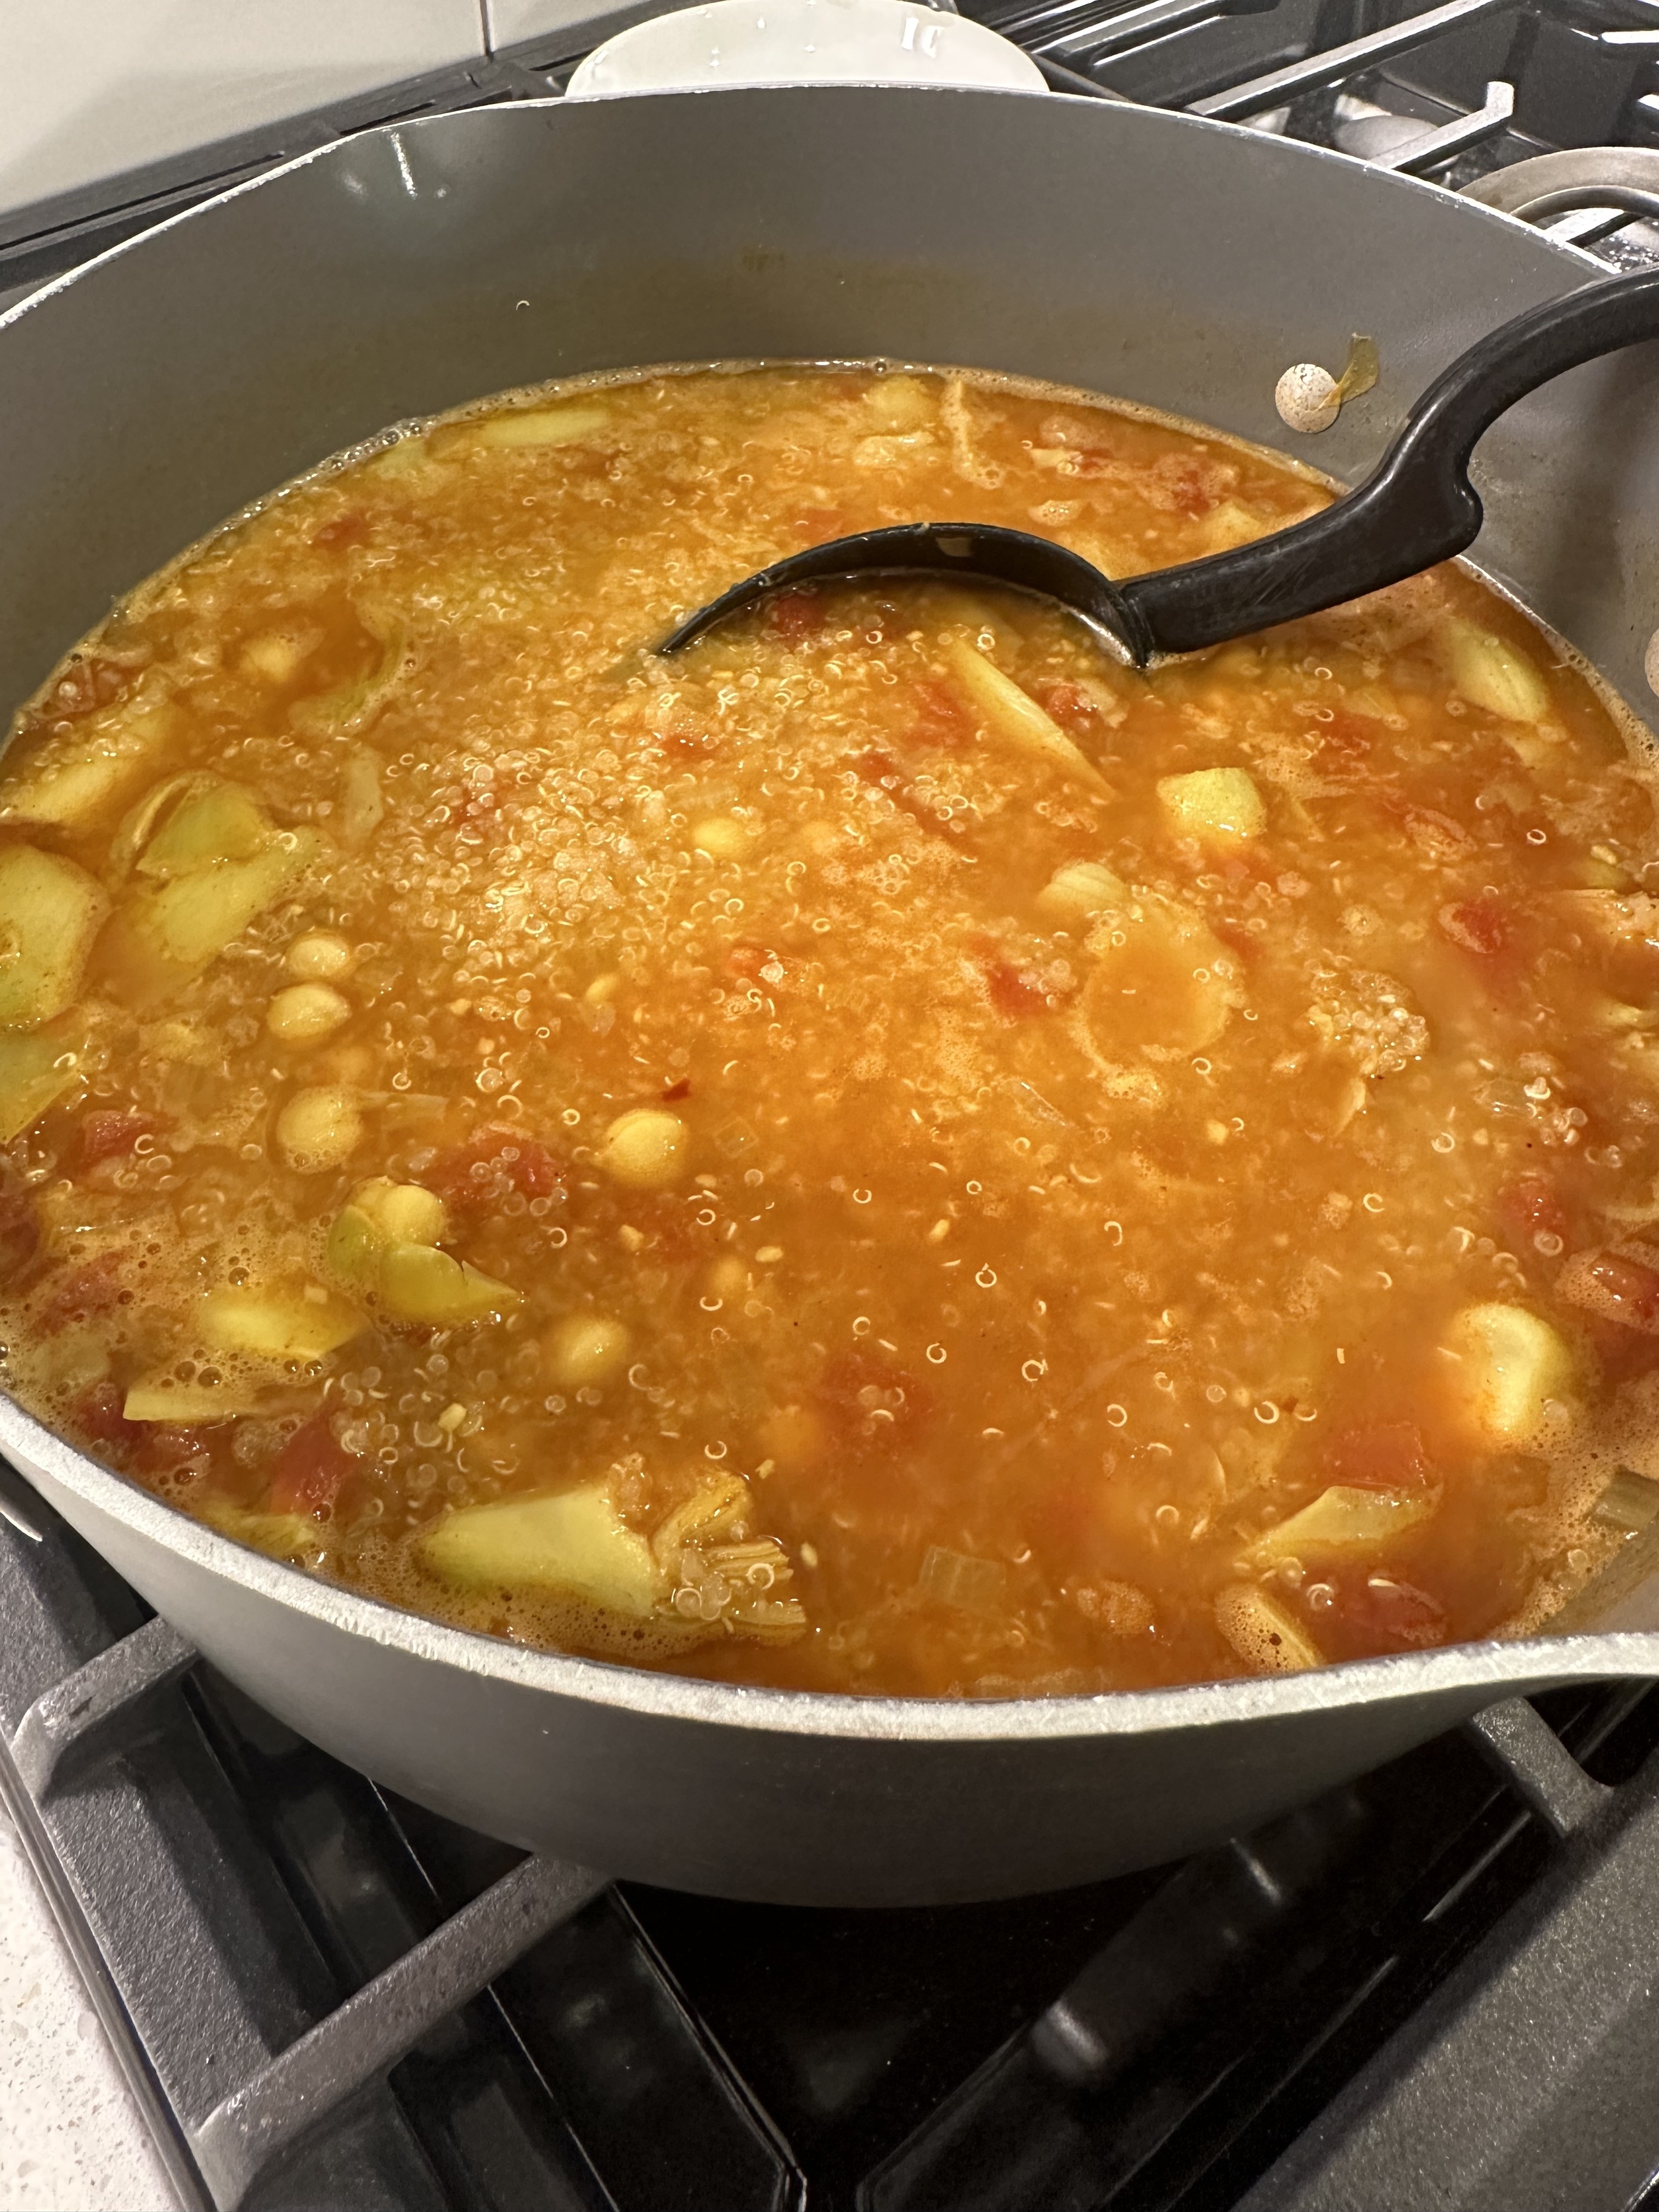 a pot of soup